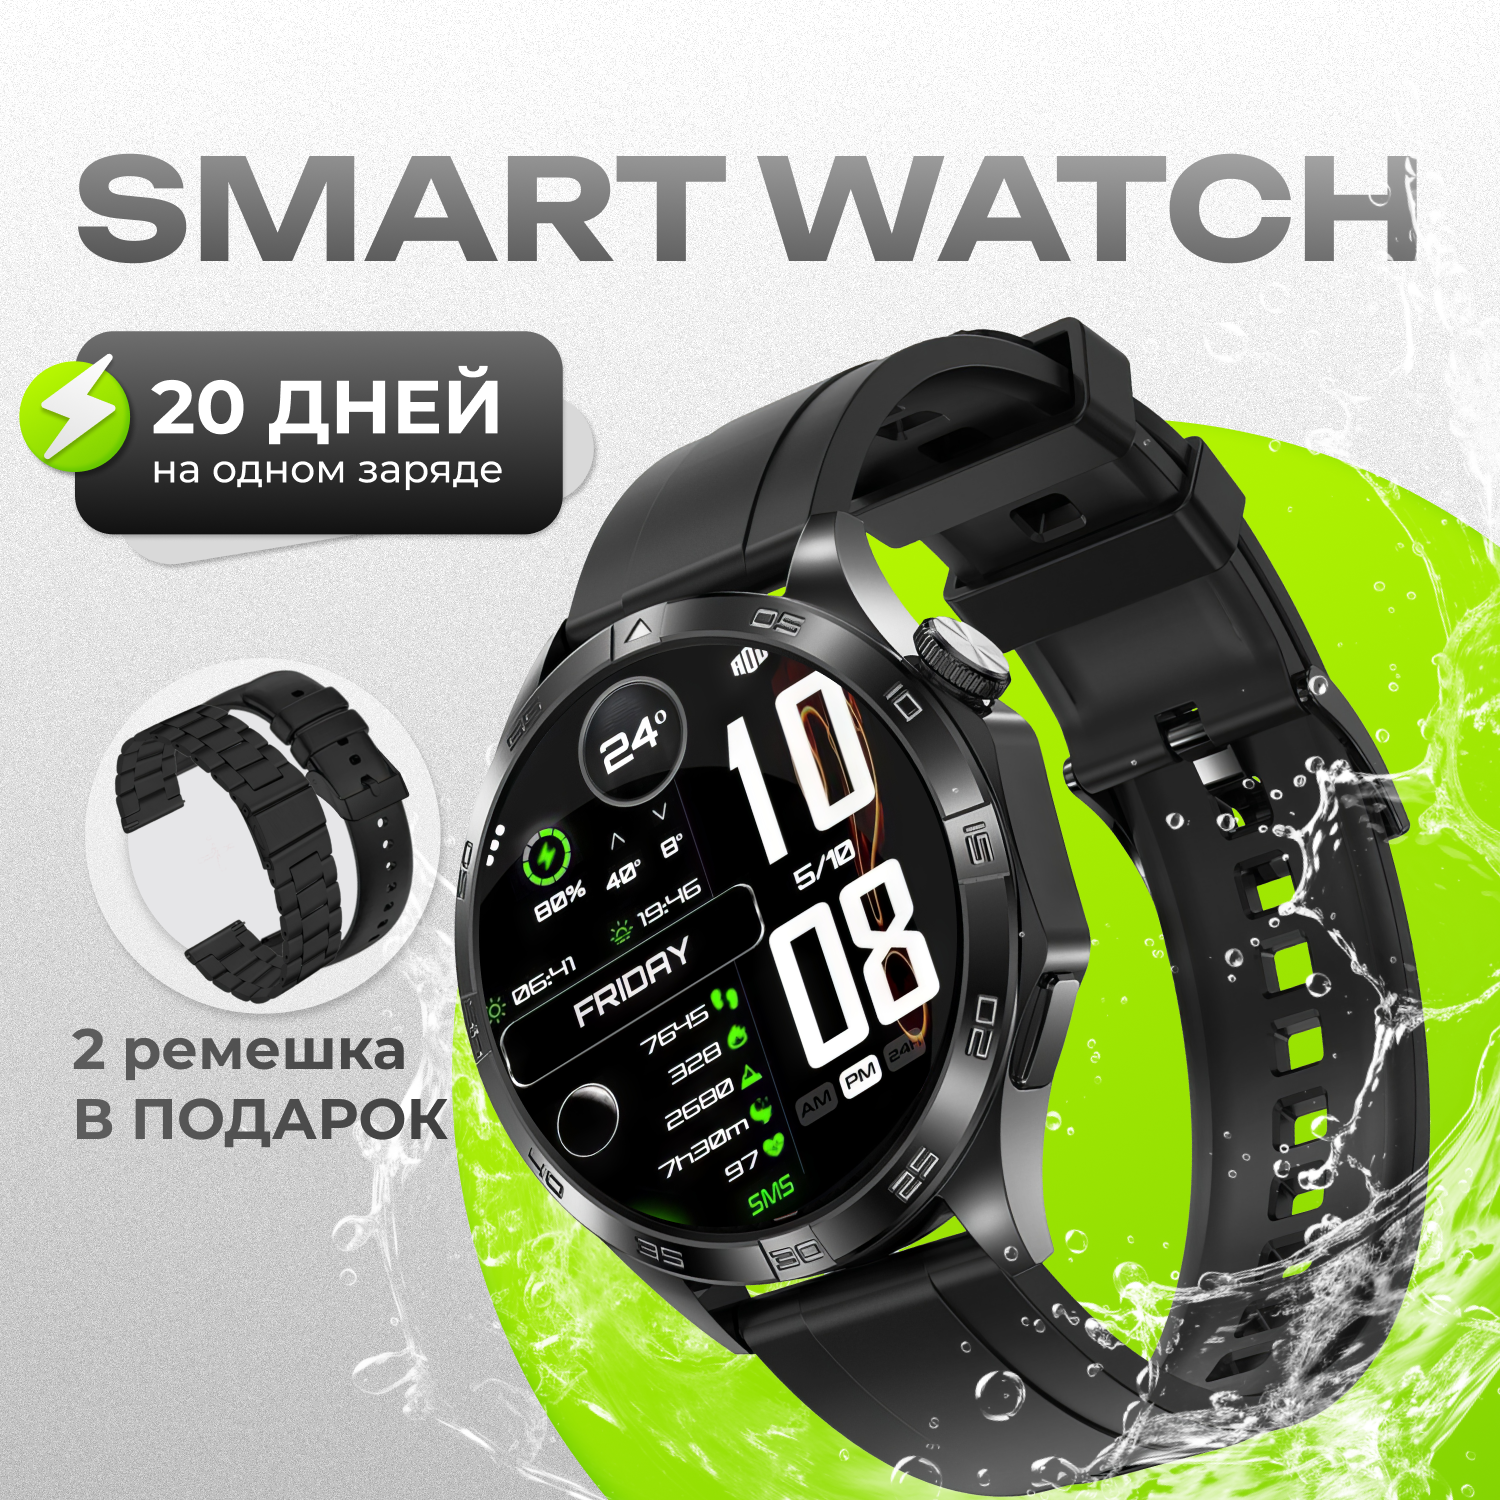 Смарт часы мужские наручные умные электронные черные круглые smart watch на руку для андроид iphone вотч водонепроницаемые спортивные сенсорные фитнес смартчасы 2 ремешка в подарок